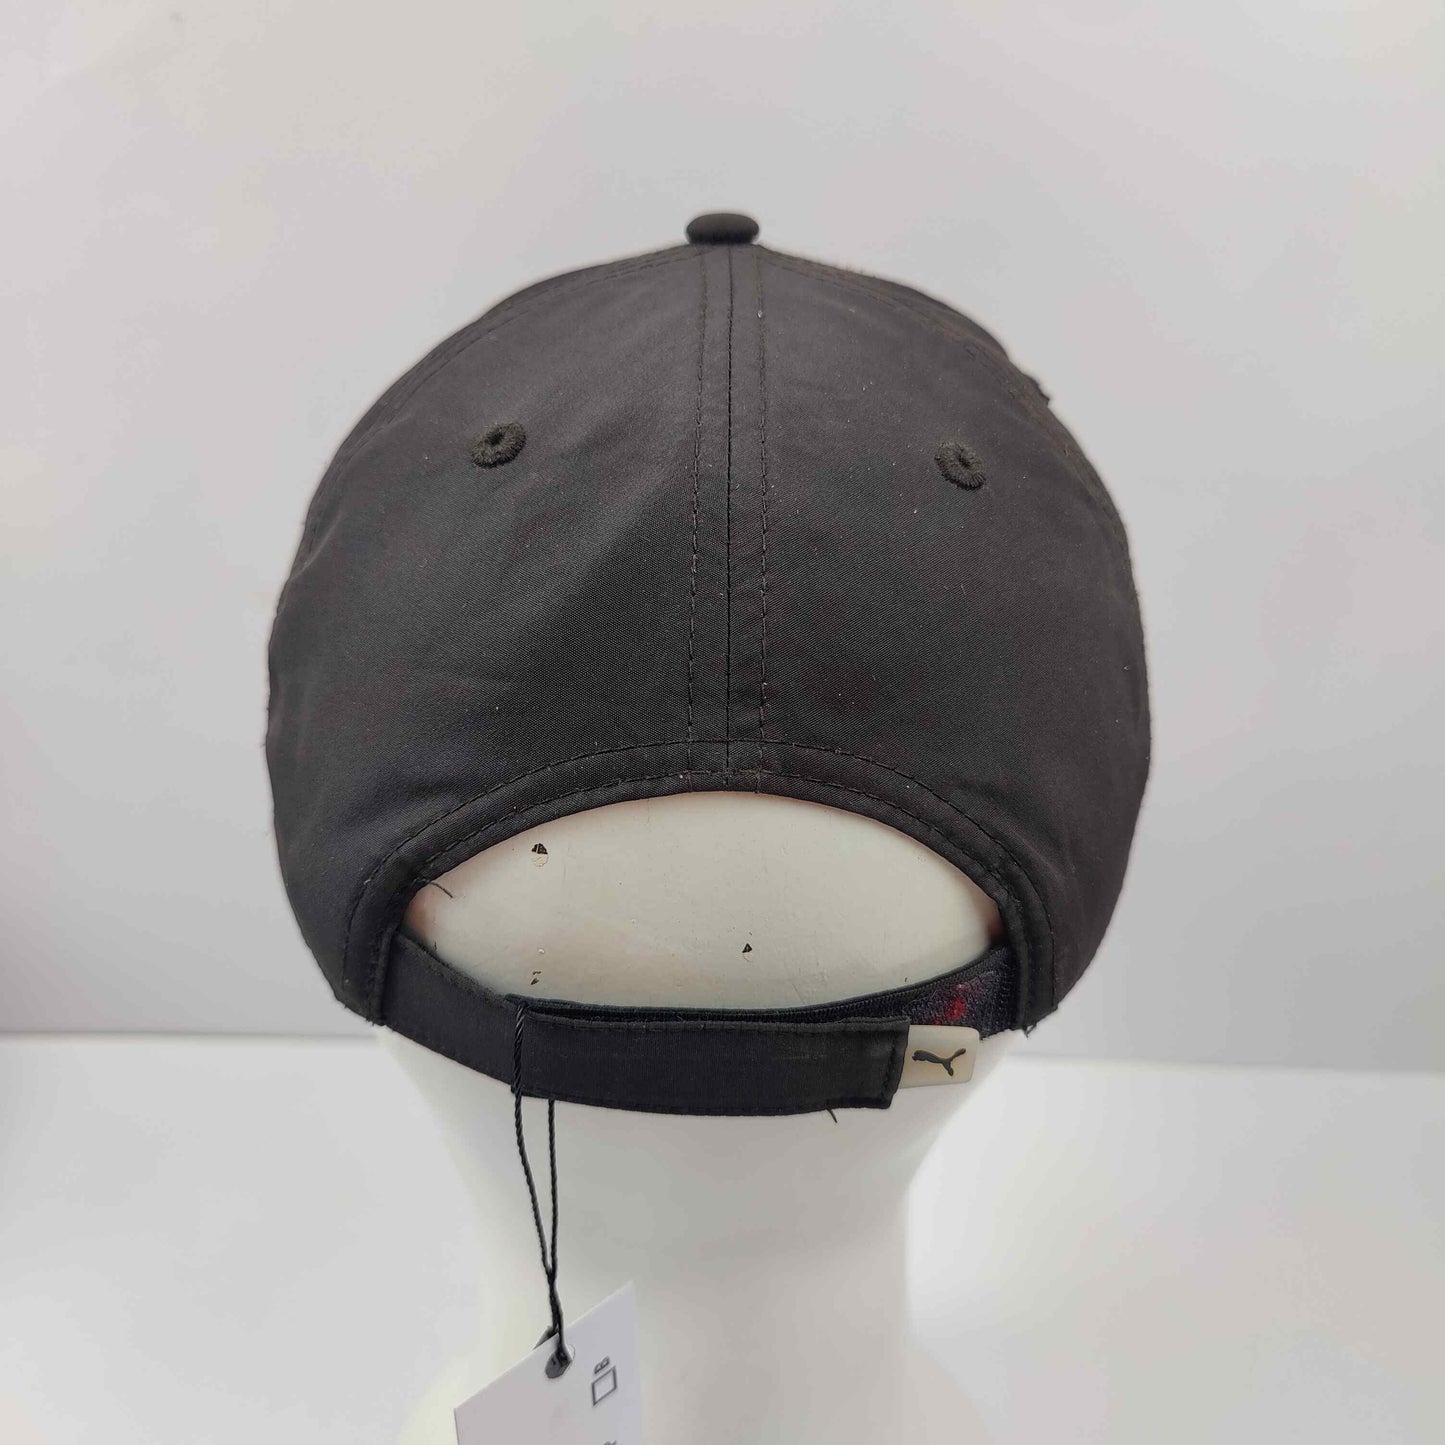 Puma Baseball Cap - Black - 1259